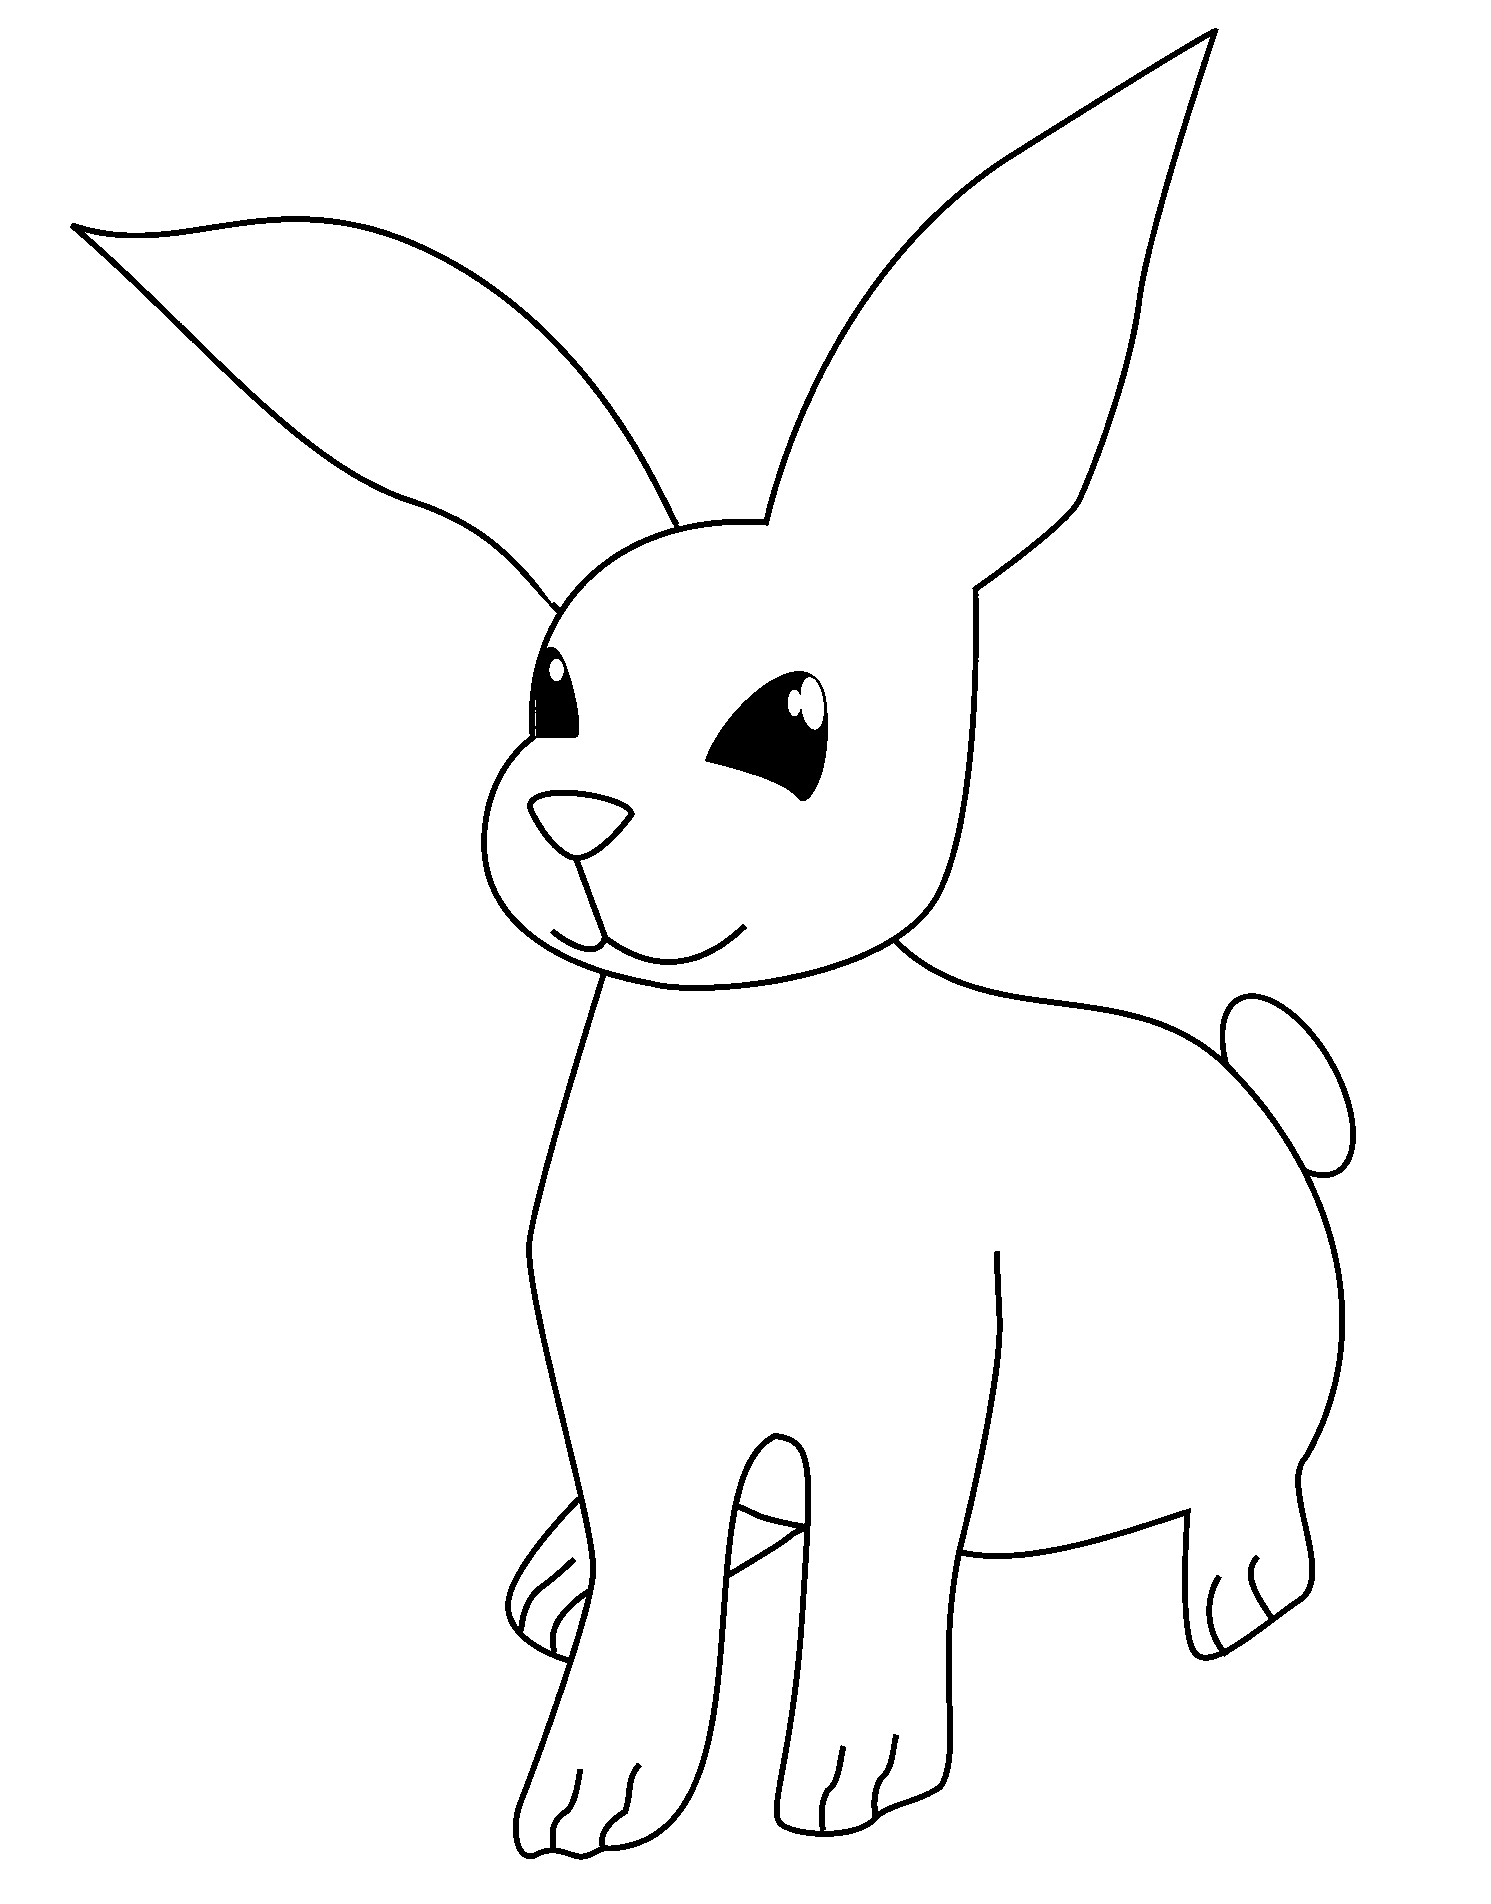 Disegno da colorare di un coniglio